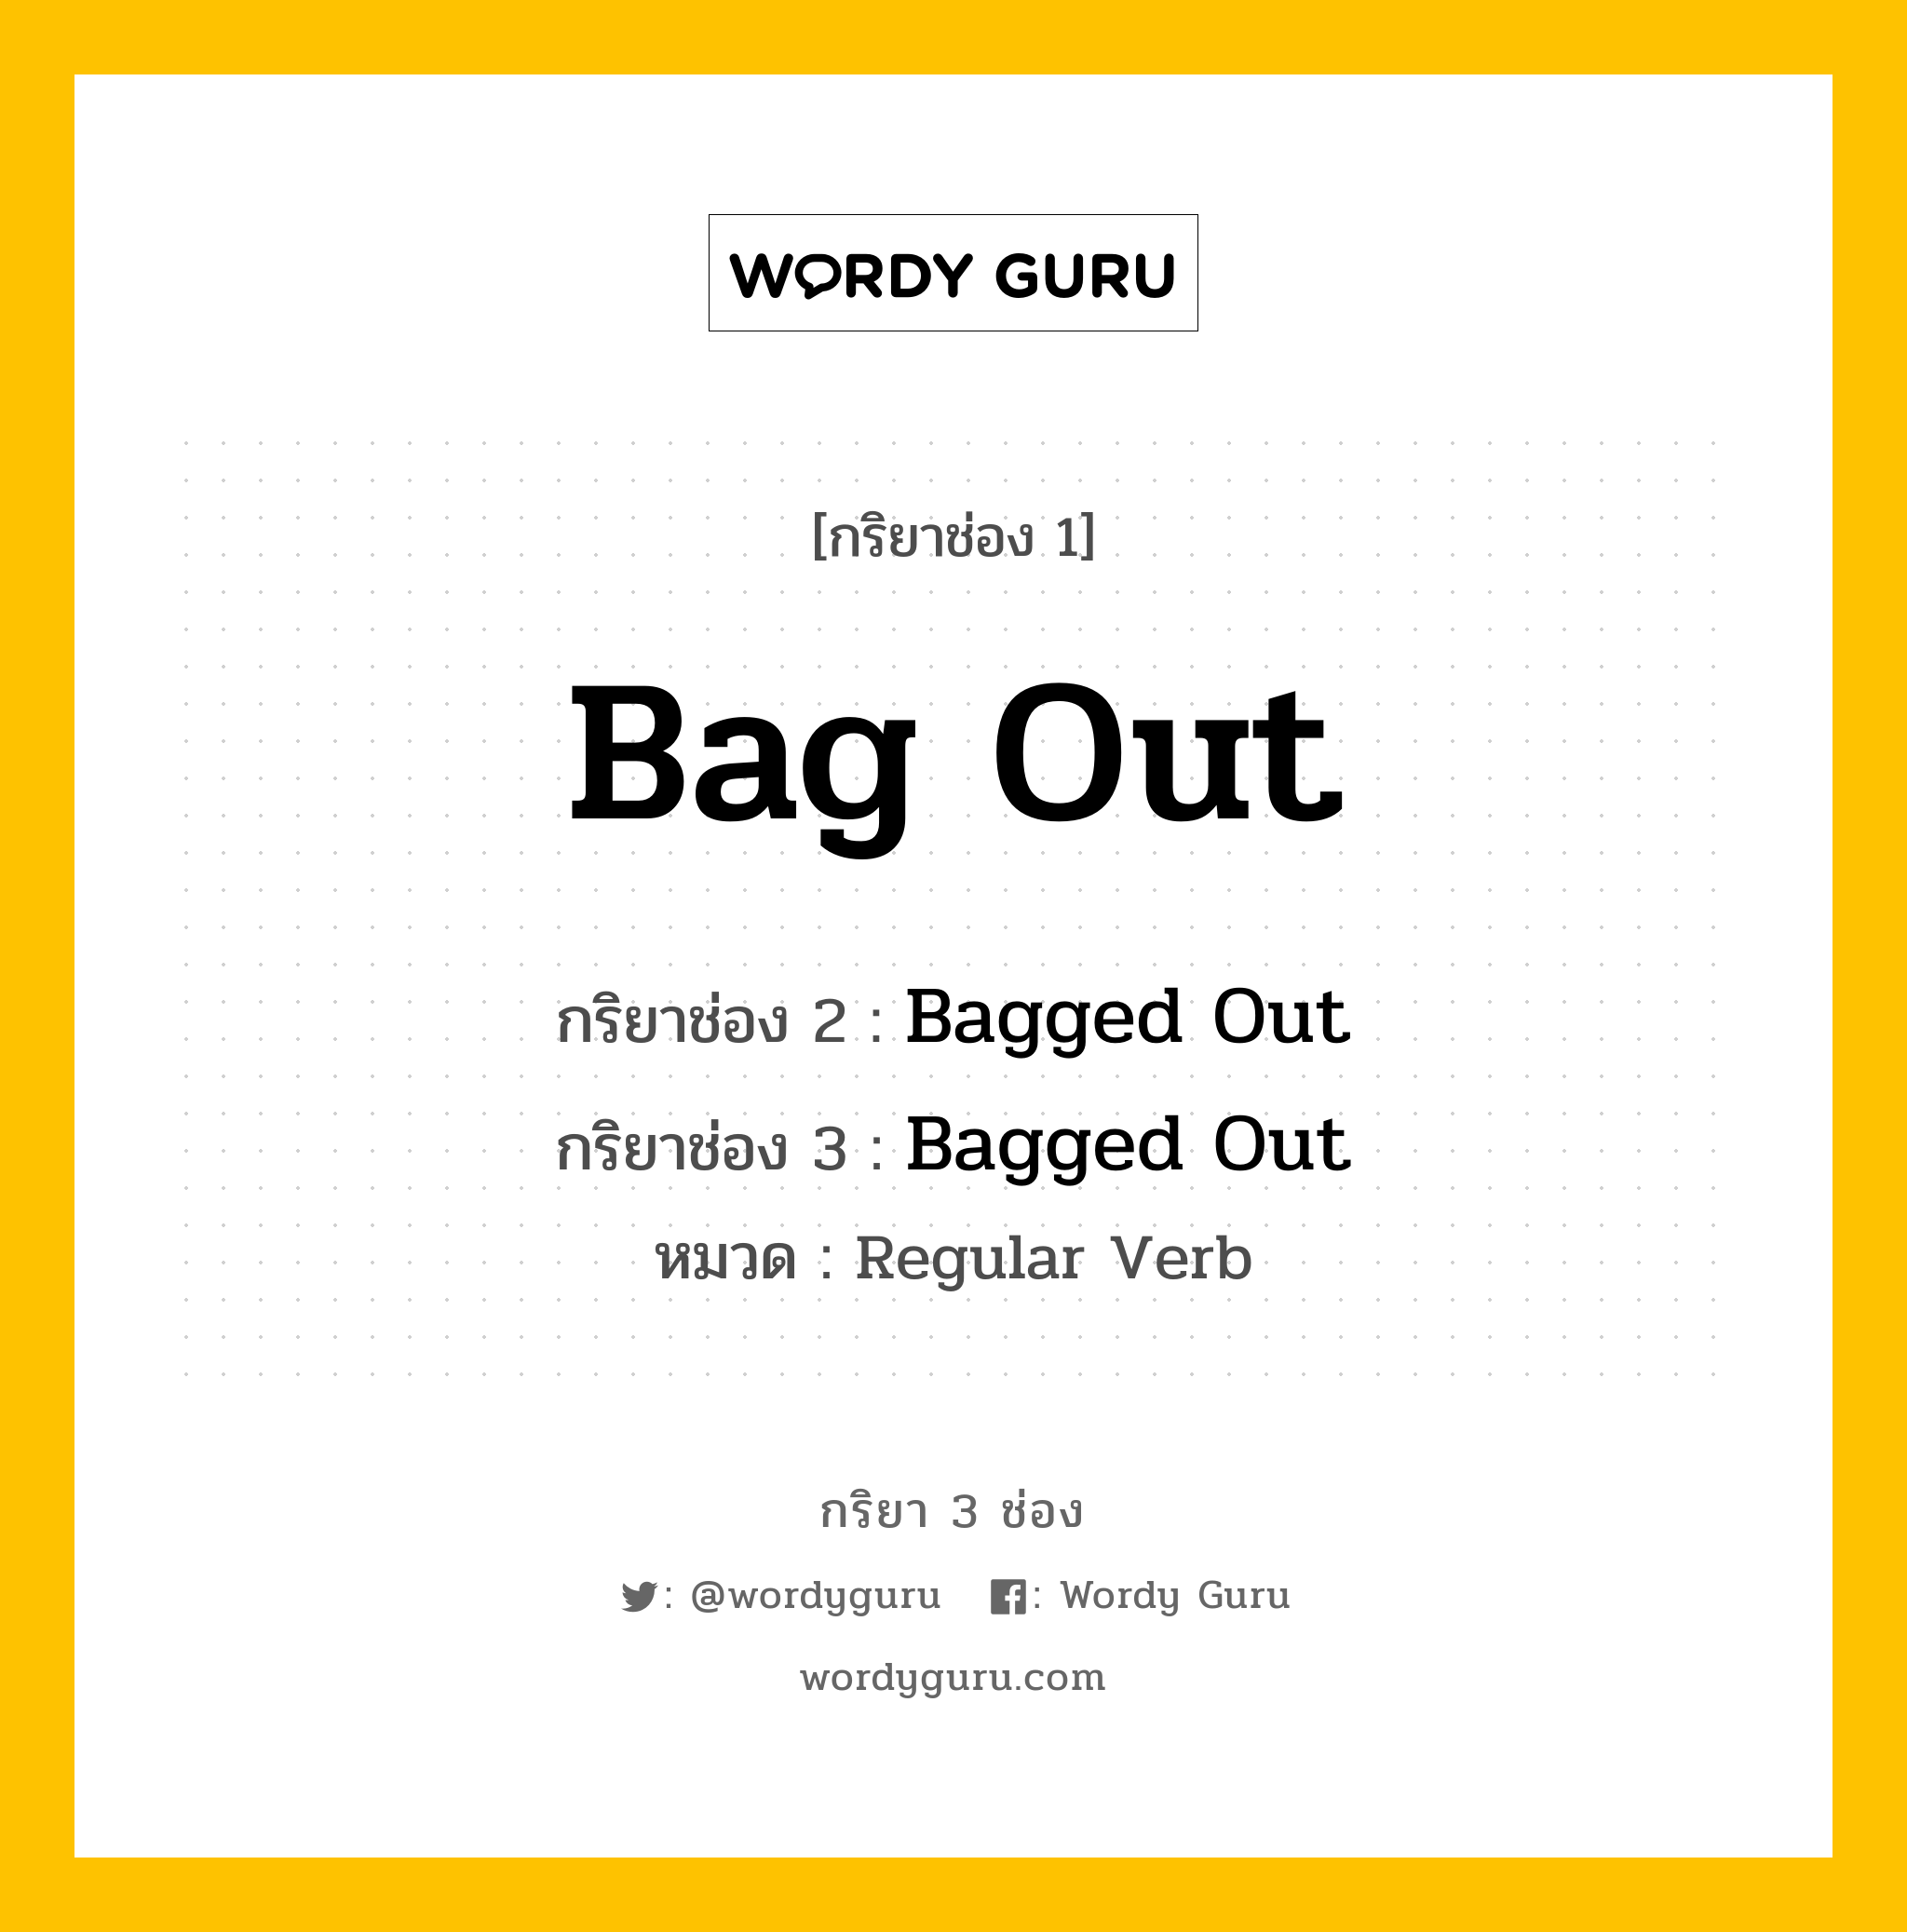 กริยา 3 ช่อง: Bag Out ช่อง 2 Bag Out ช่อง 3 คืออะไร, กริยาช่อง 1 Bag Out กริยาช่อง 2 Bagged Out กริยาช่อง 3 Bagged Out หมวด Regular Verb หมวด Regular Verb